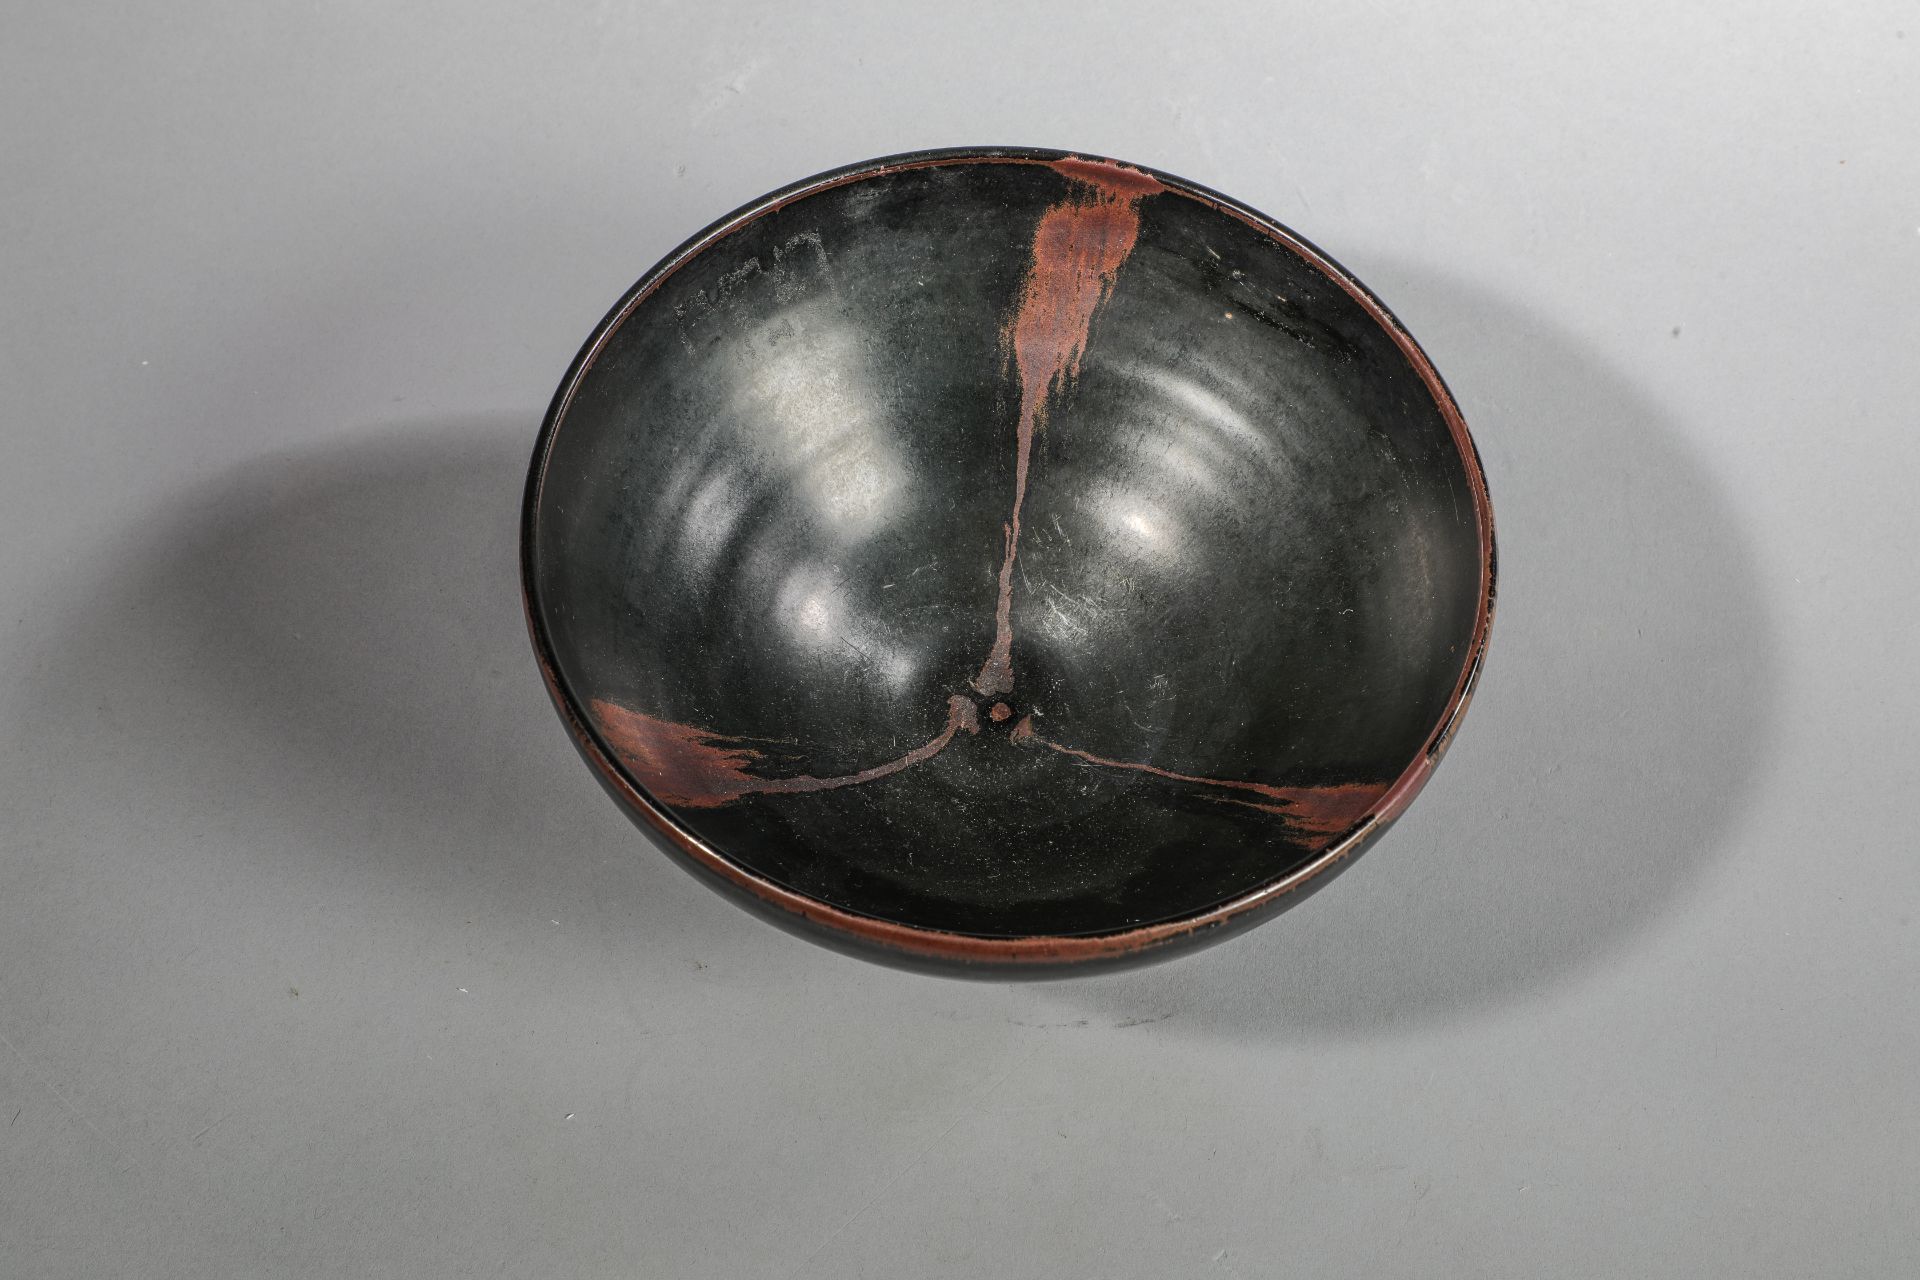 Coupe de forme lianzi sur pied en couronne en fin grès porcelaineux à glaçure monochrome noire ornée - Image 2 of 6